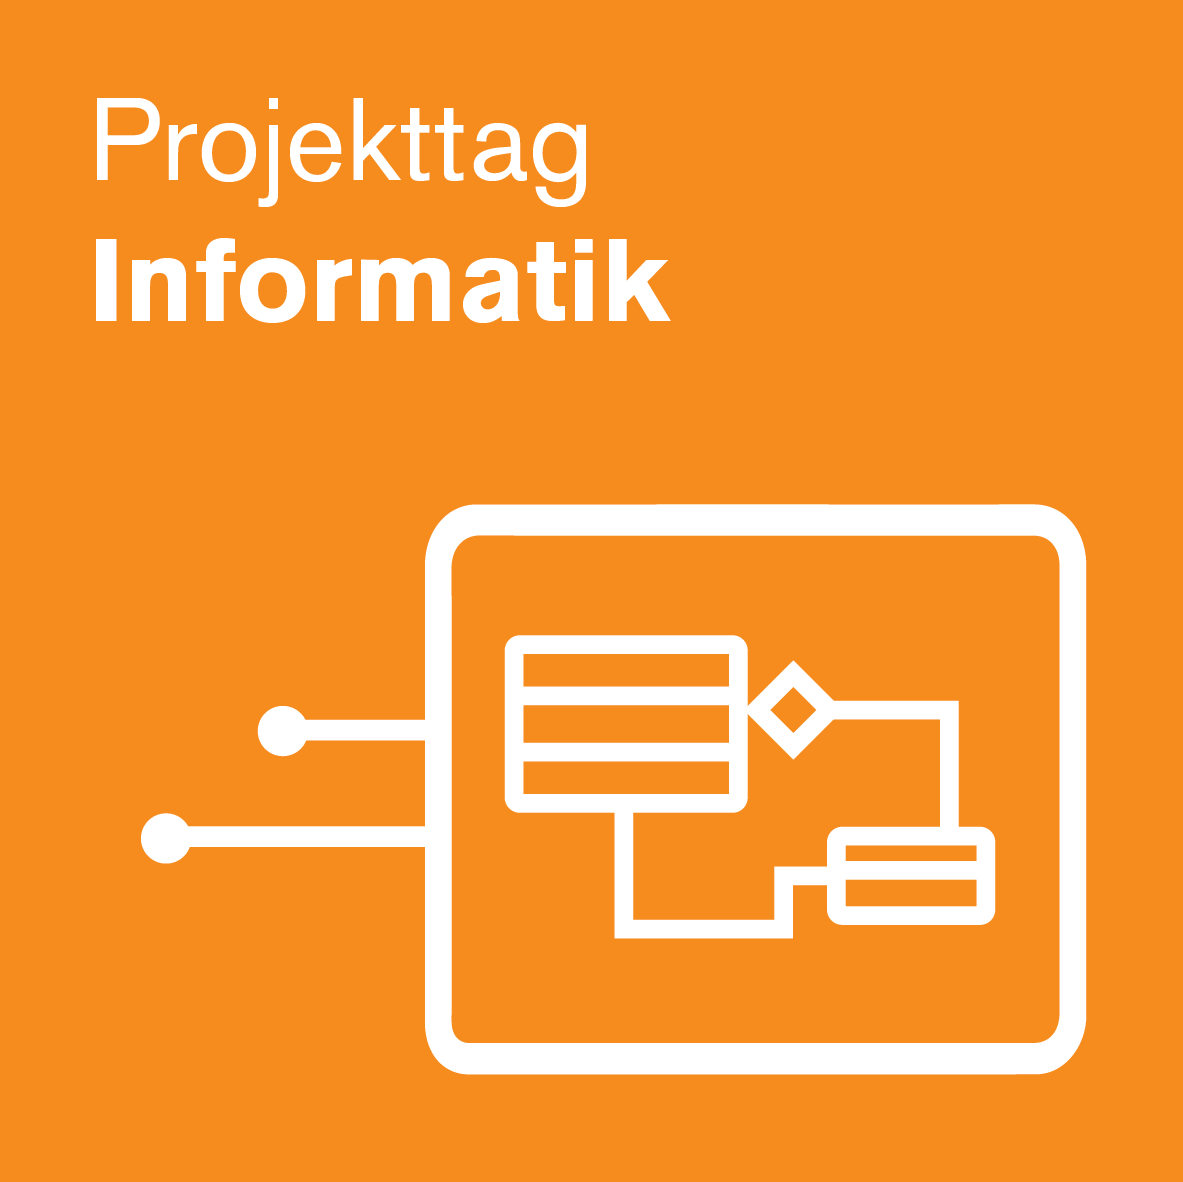 Projekttag Informatik 2021 - Online